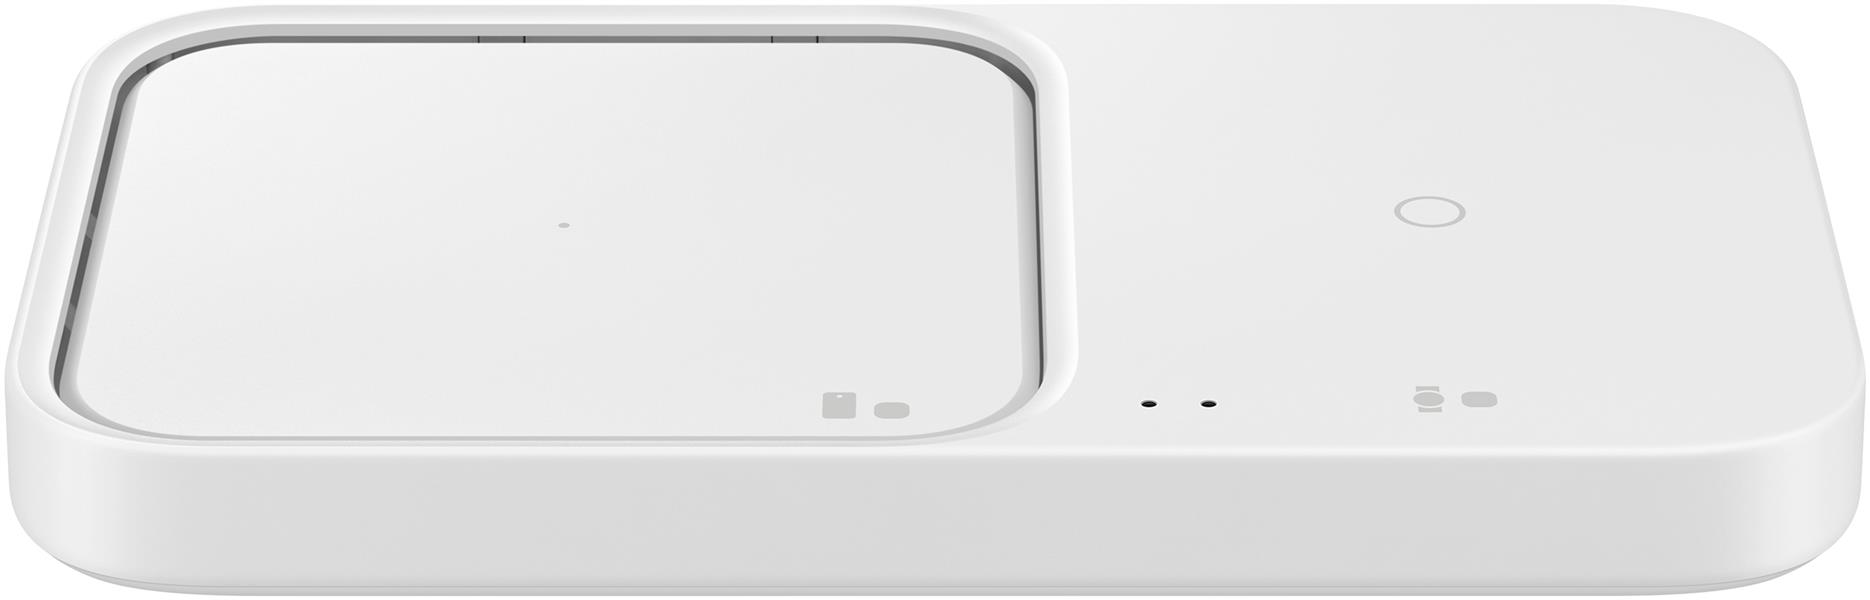 Samsung EP-P5400 Wit Binnen